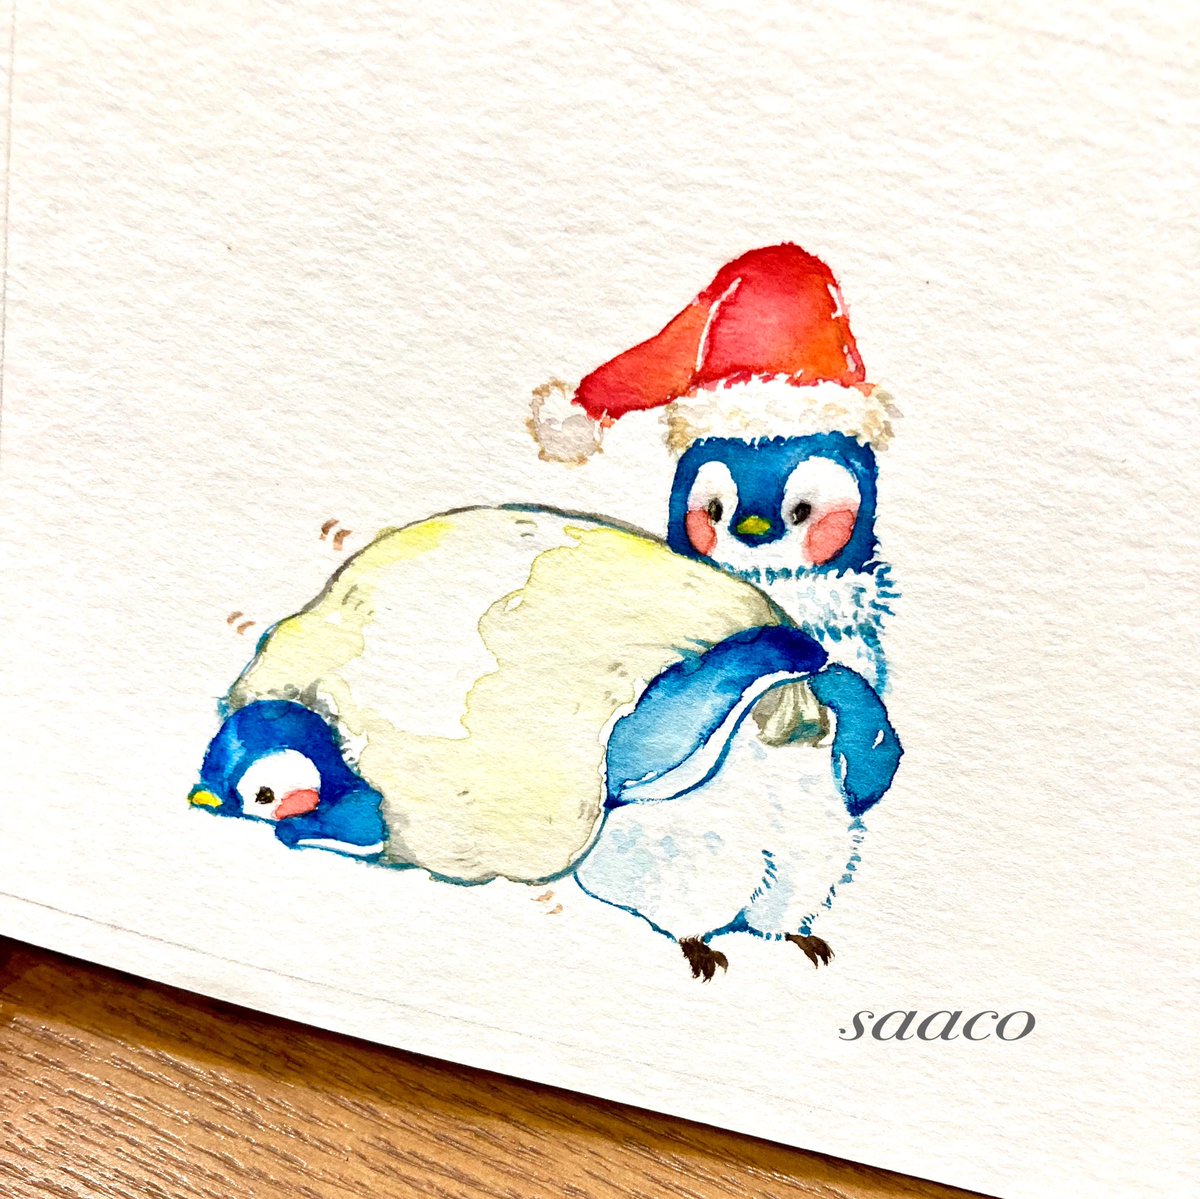 「ペンギンのサンタさん#イラスト#saaco展#peaberry さん追加納品分 」|saaco ⭐︎3/25〜オルソのおいしい雑貨店のイラスト